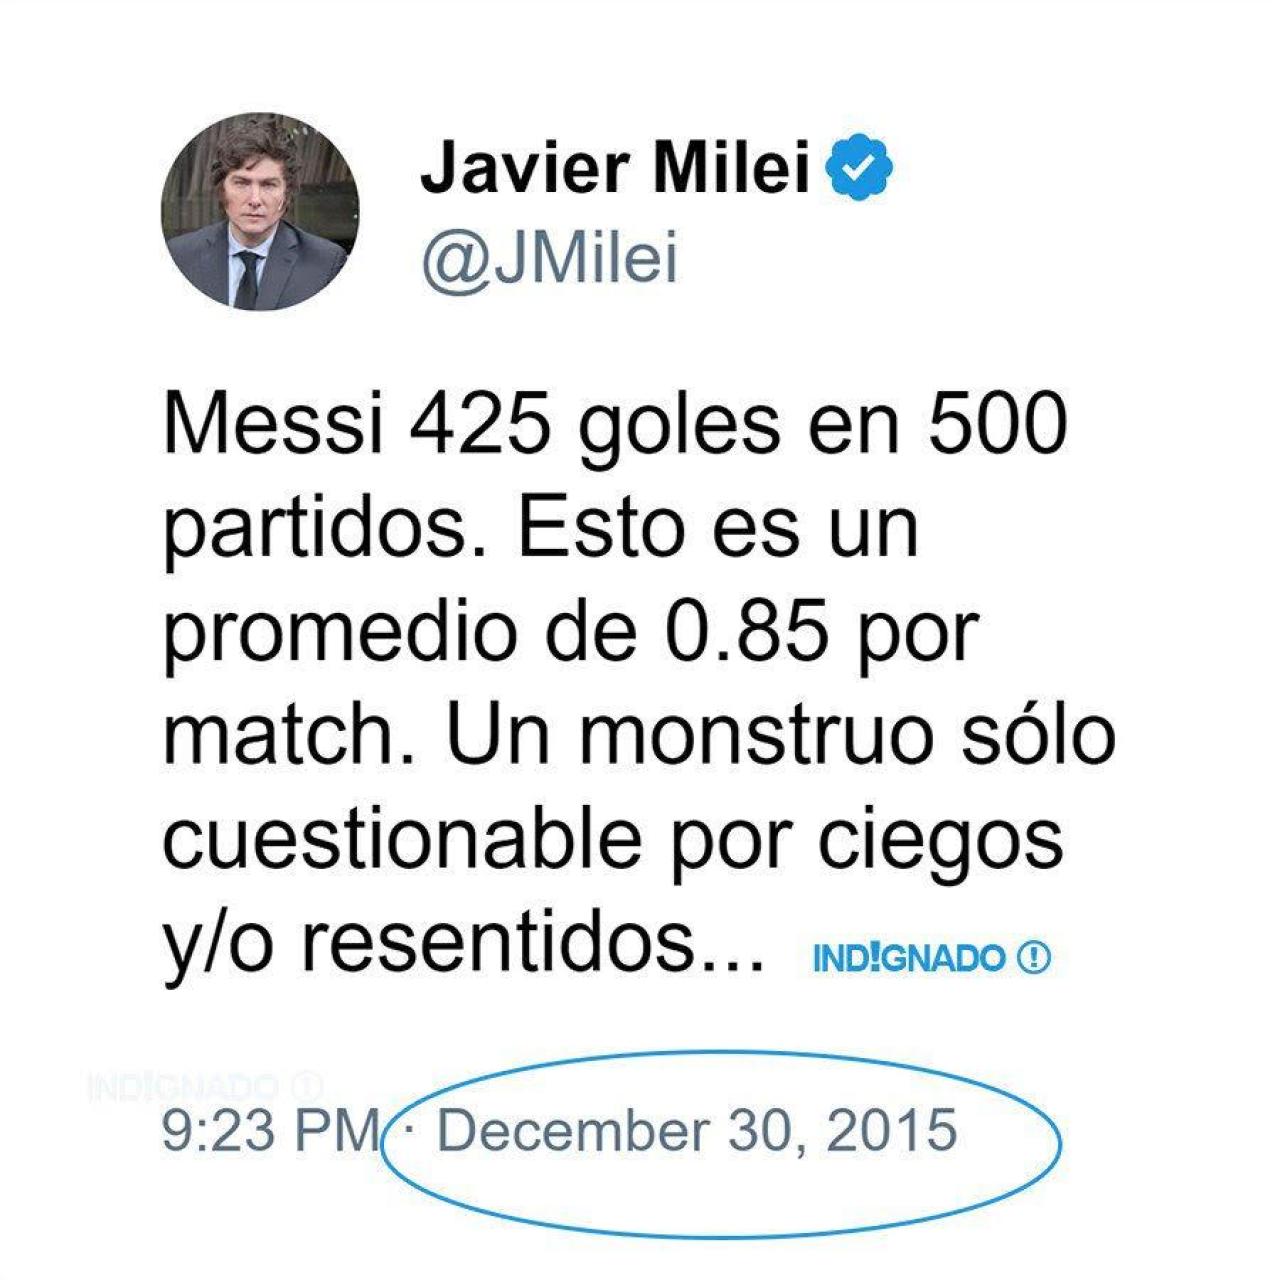 Tuit de Milei defendiendo a Messi en 2015.